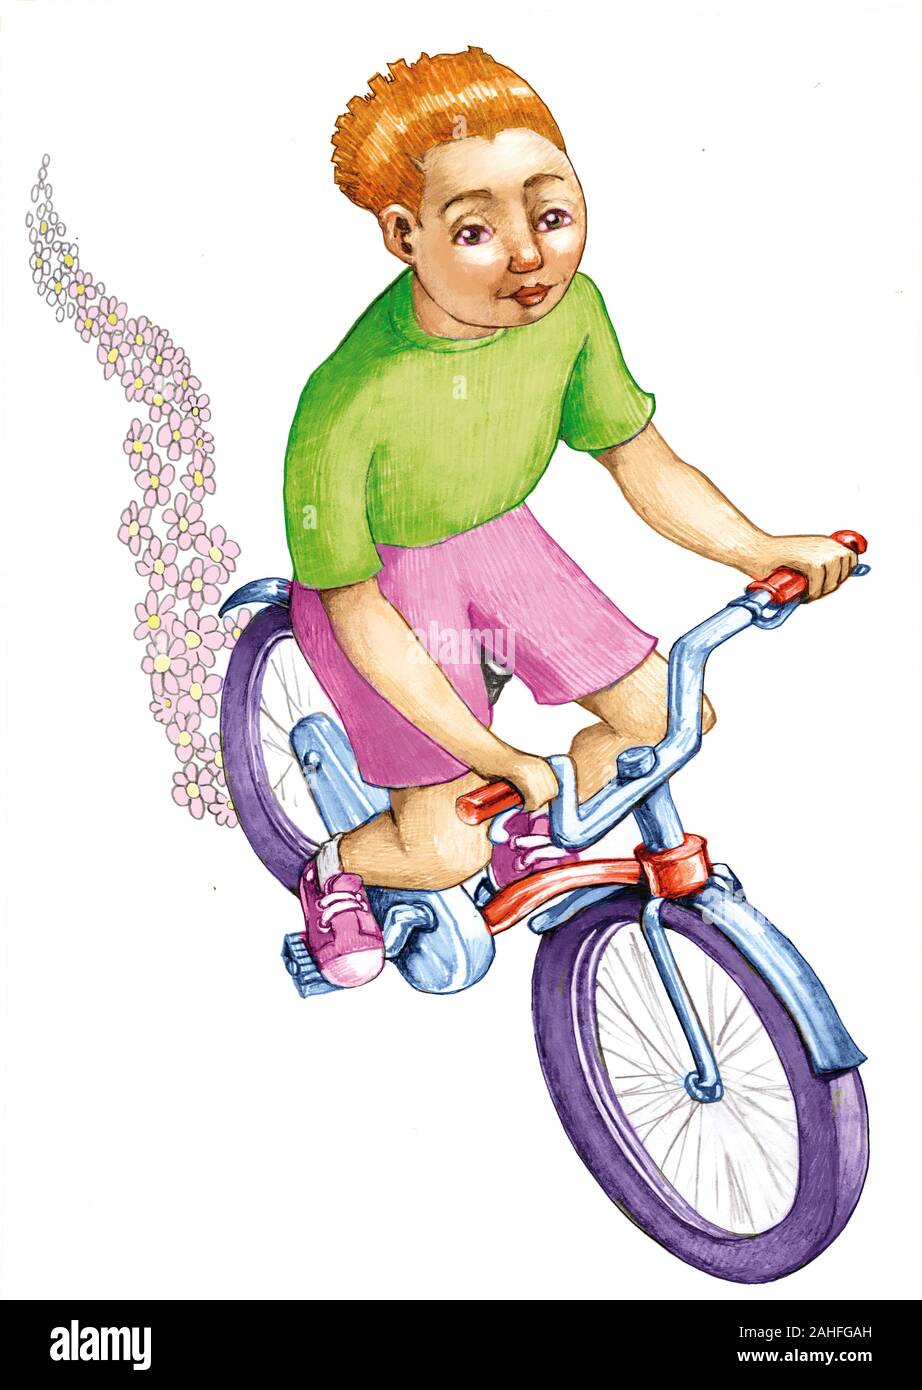 Fille en pantalon court vélo pédale laisse derrière elle des fleurs Sentier allégorie de transports non polluants Banque D'Images